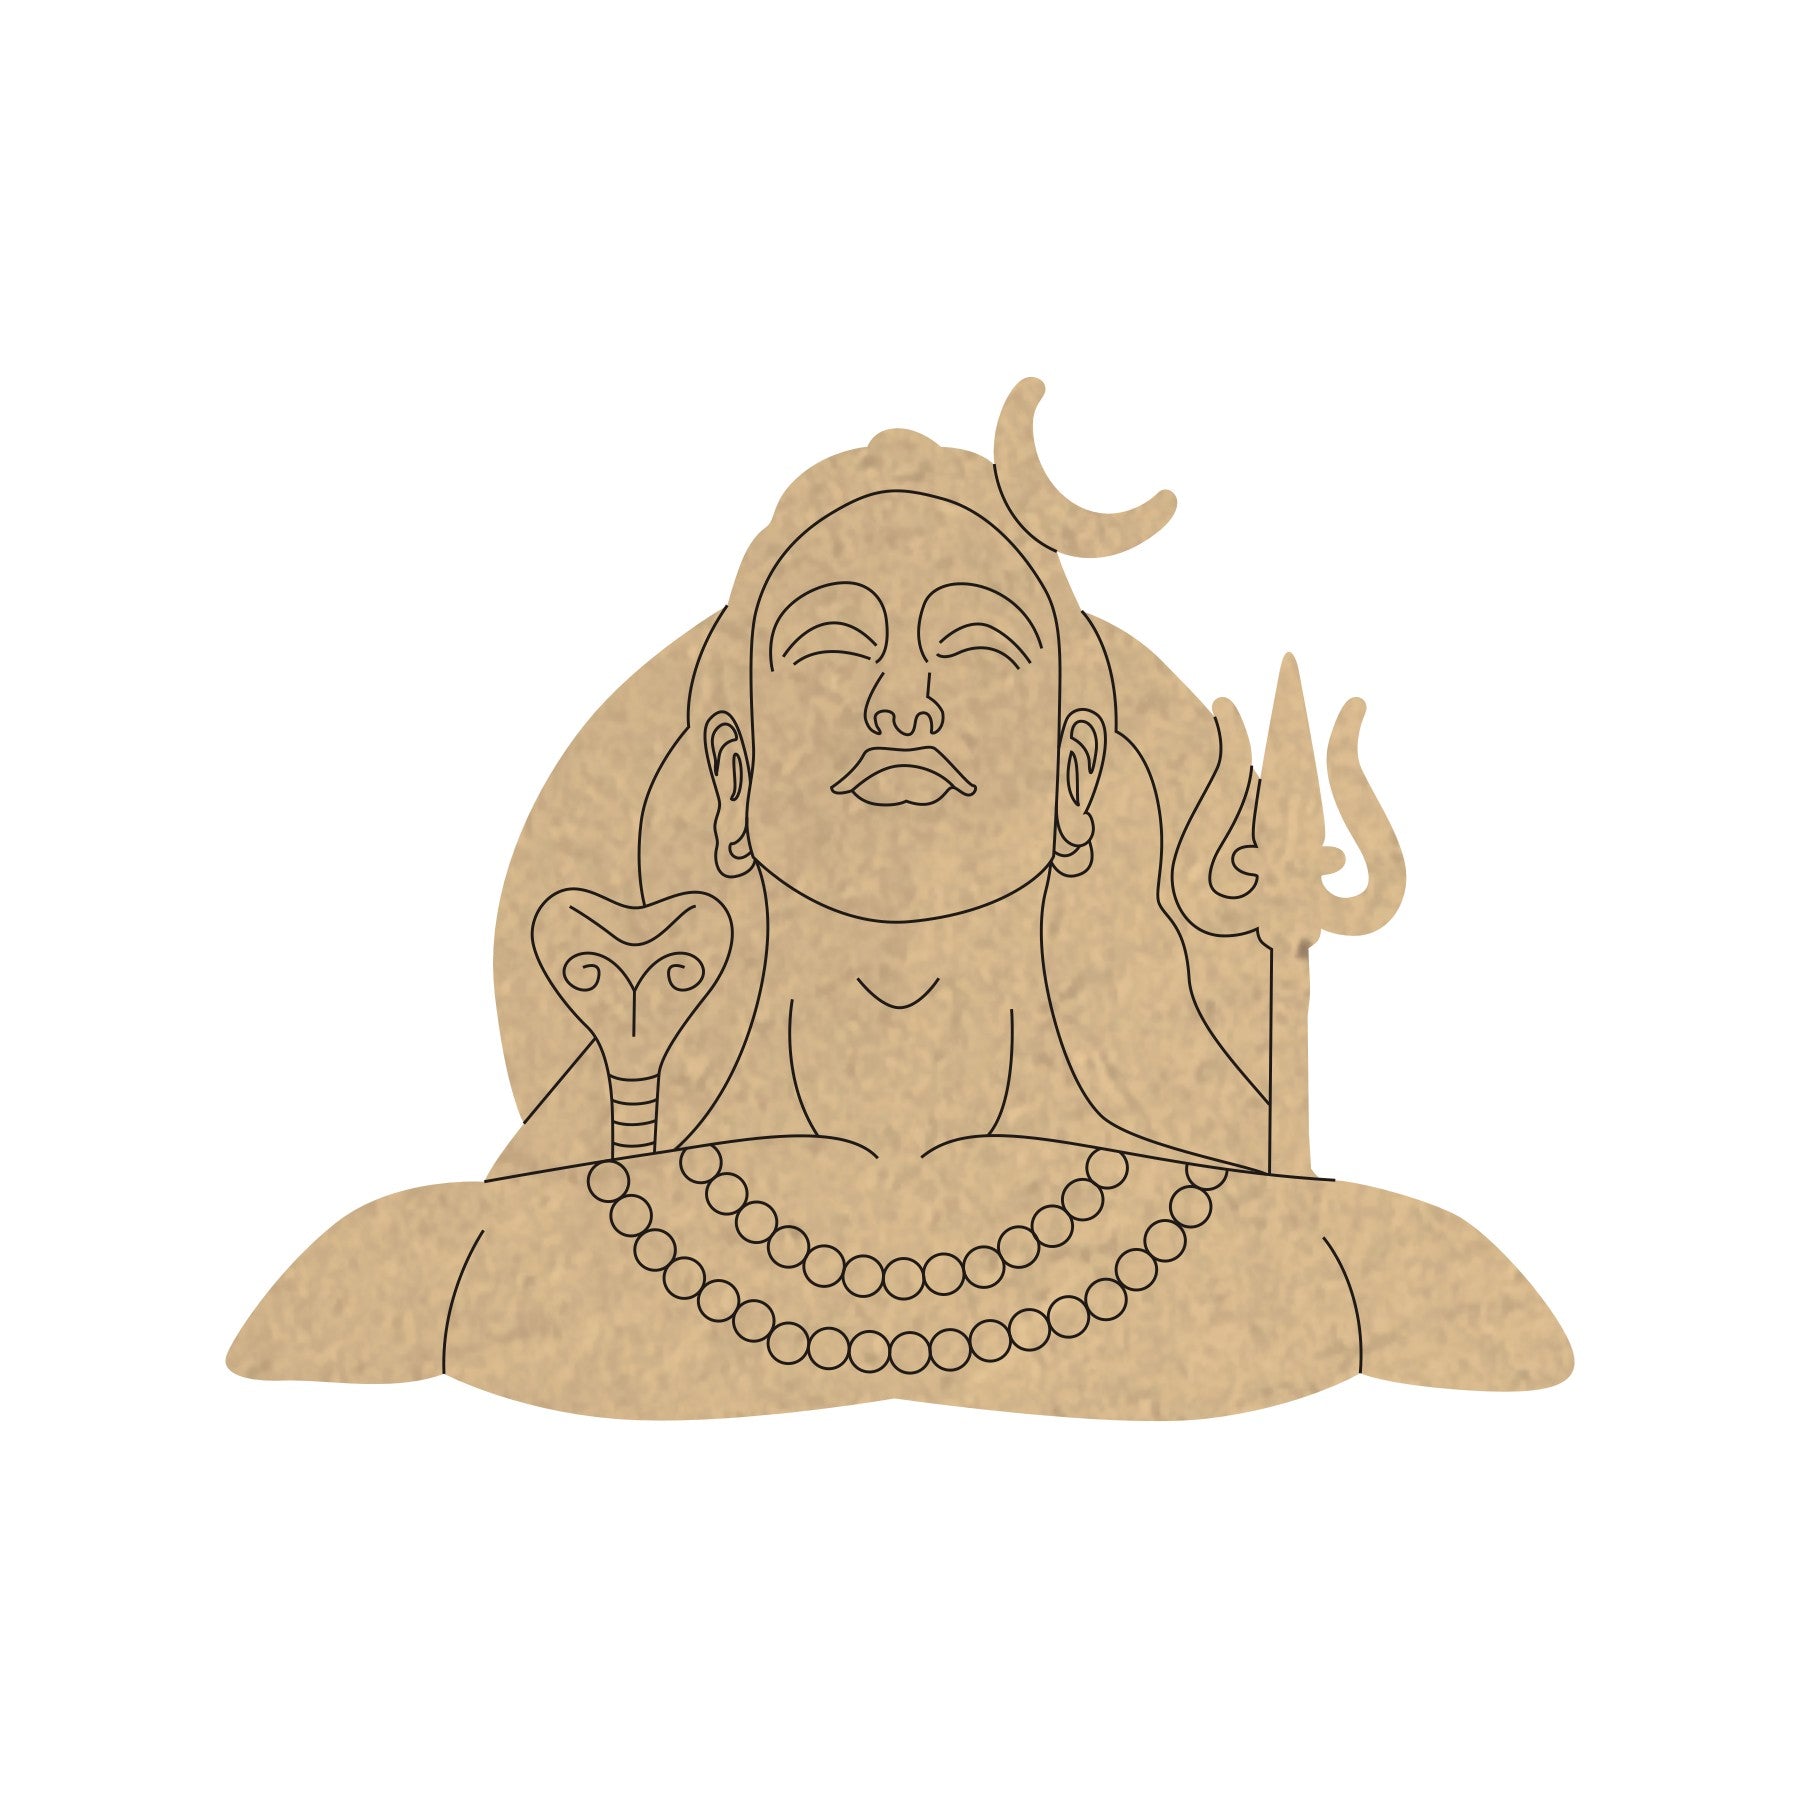 How to draw angry shiva | mahakal drawing kaseya kara #art - YouTube